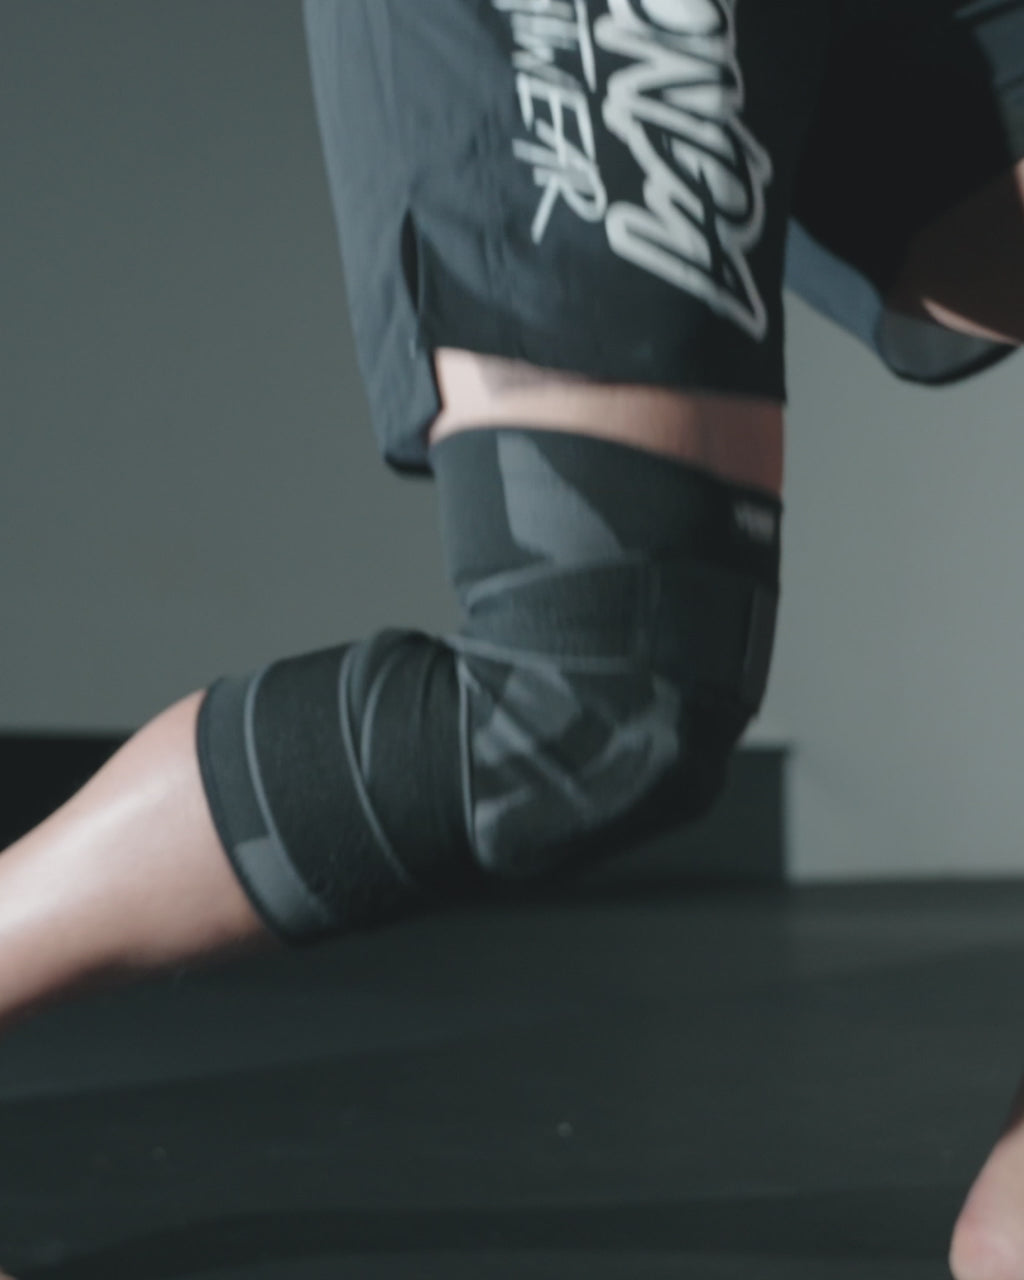 Anaconda Knee Brace: The Jiu Jitsu Knee Brace – anacondafightwear